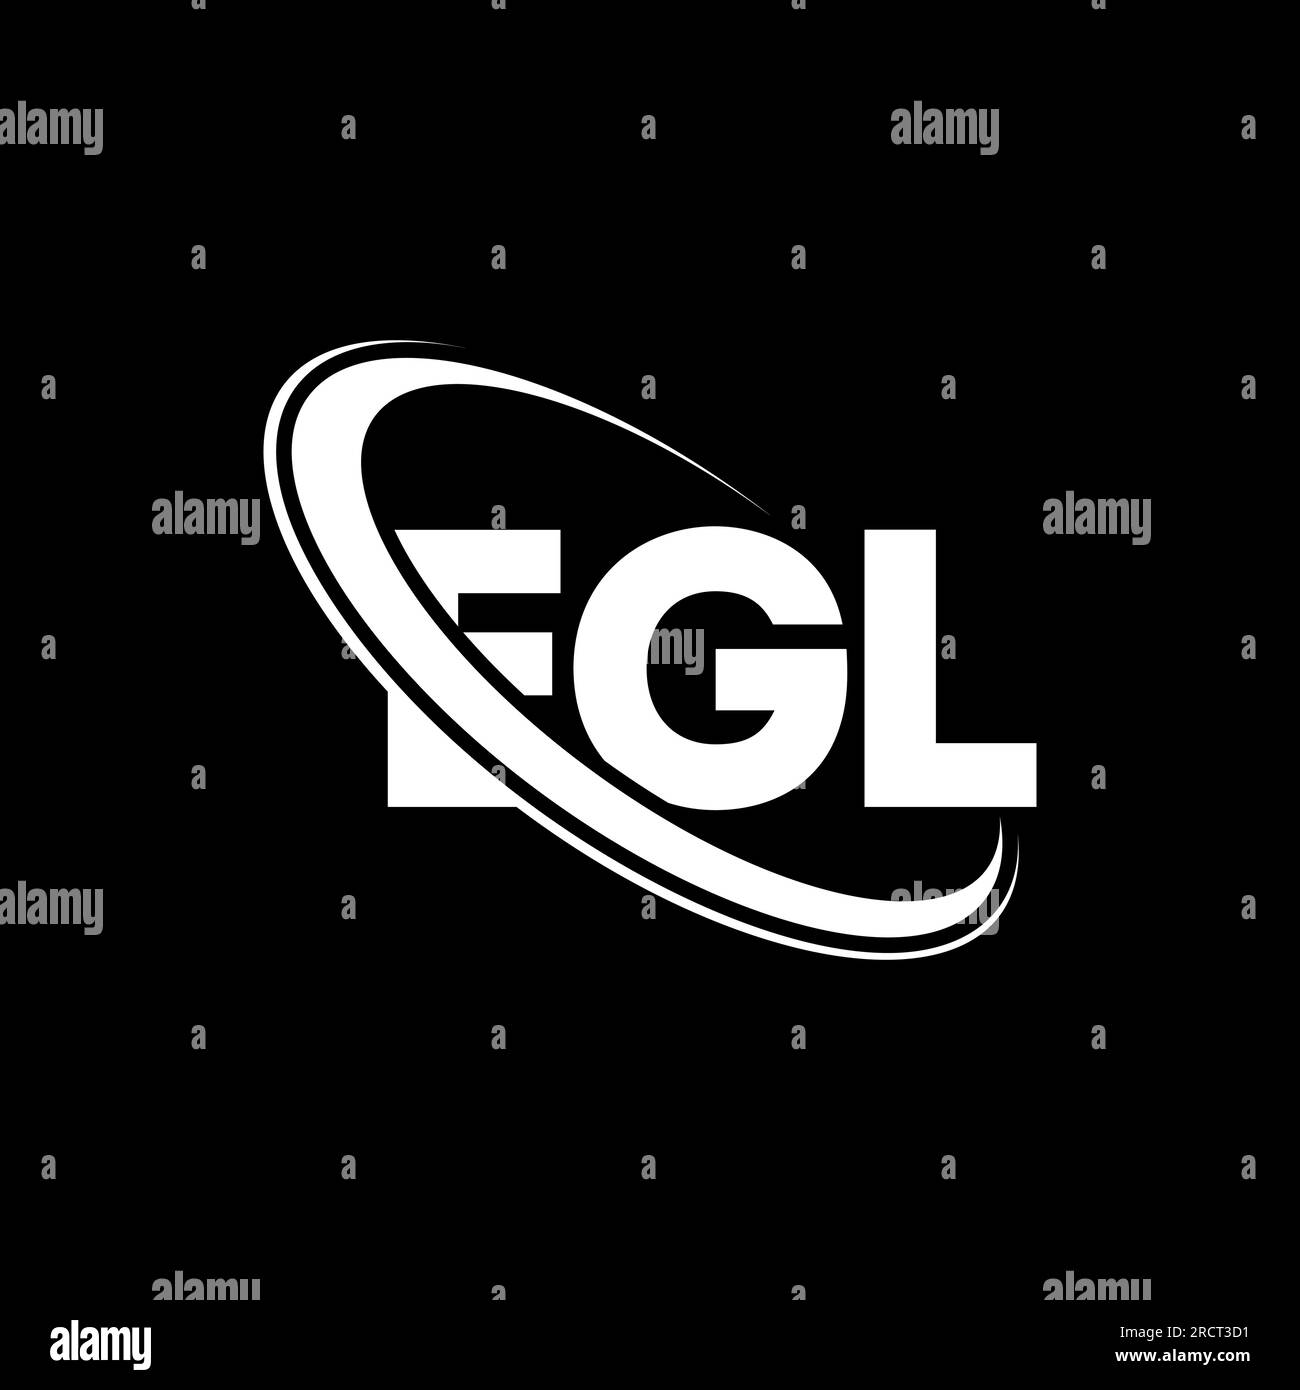 EGL-Logo. EGL-Buchstabe. Logo mit EGL-Buchstaben. Initialen EGL-Logo, verbunden mit einem Kreis und einem Monogramm-Logo in Großbuchstaben. EGL-Typographie für Technologie, Unternehmen Stock Vektor